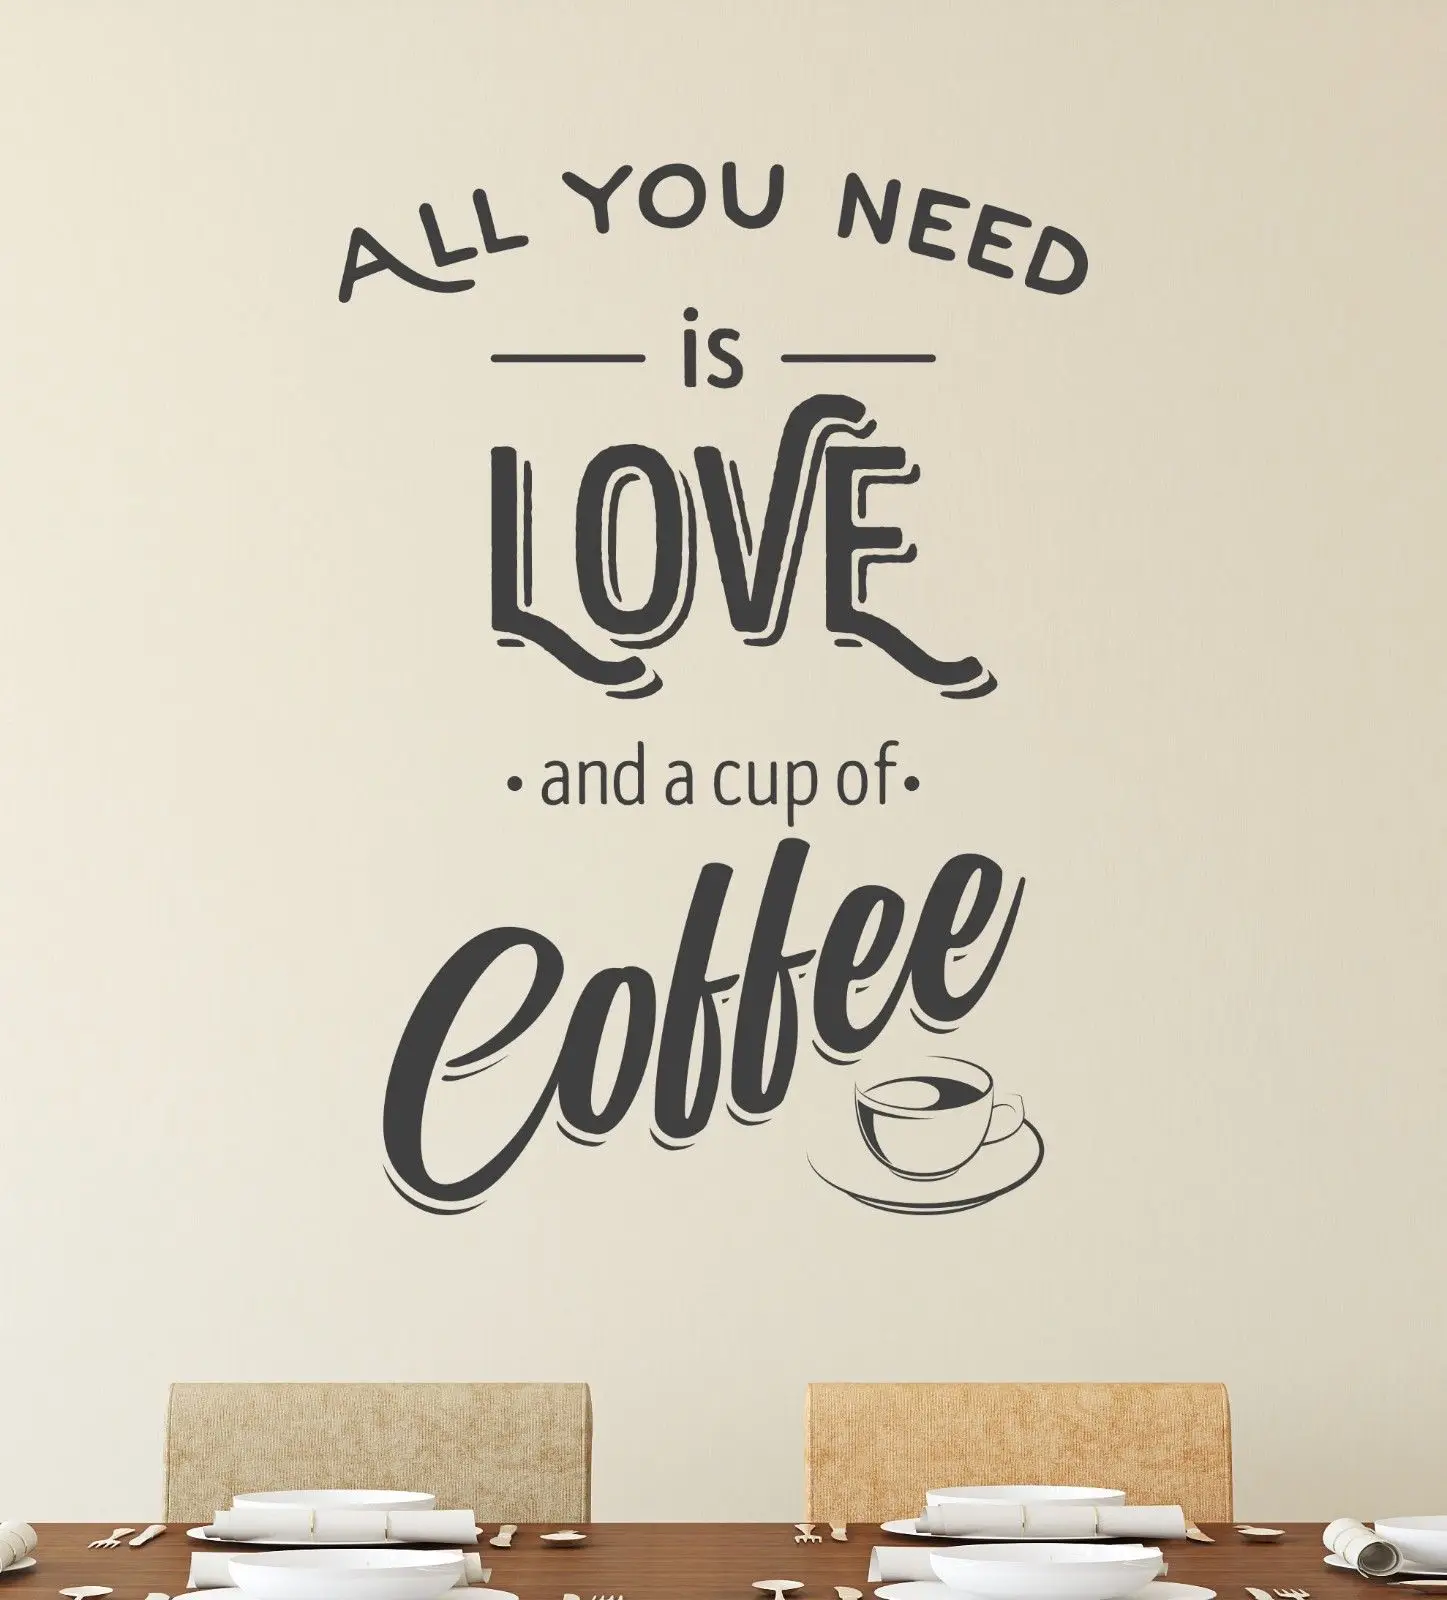 

Все, что вам нужно, это чашка на вынос любви, виниловая оконная наклейка для кафе и магазина, надпись, настенный знак для декора